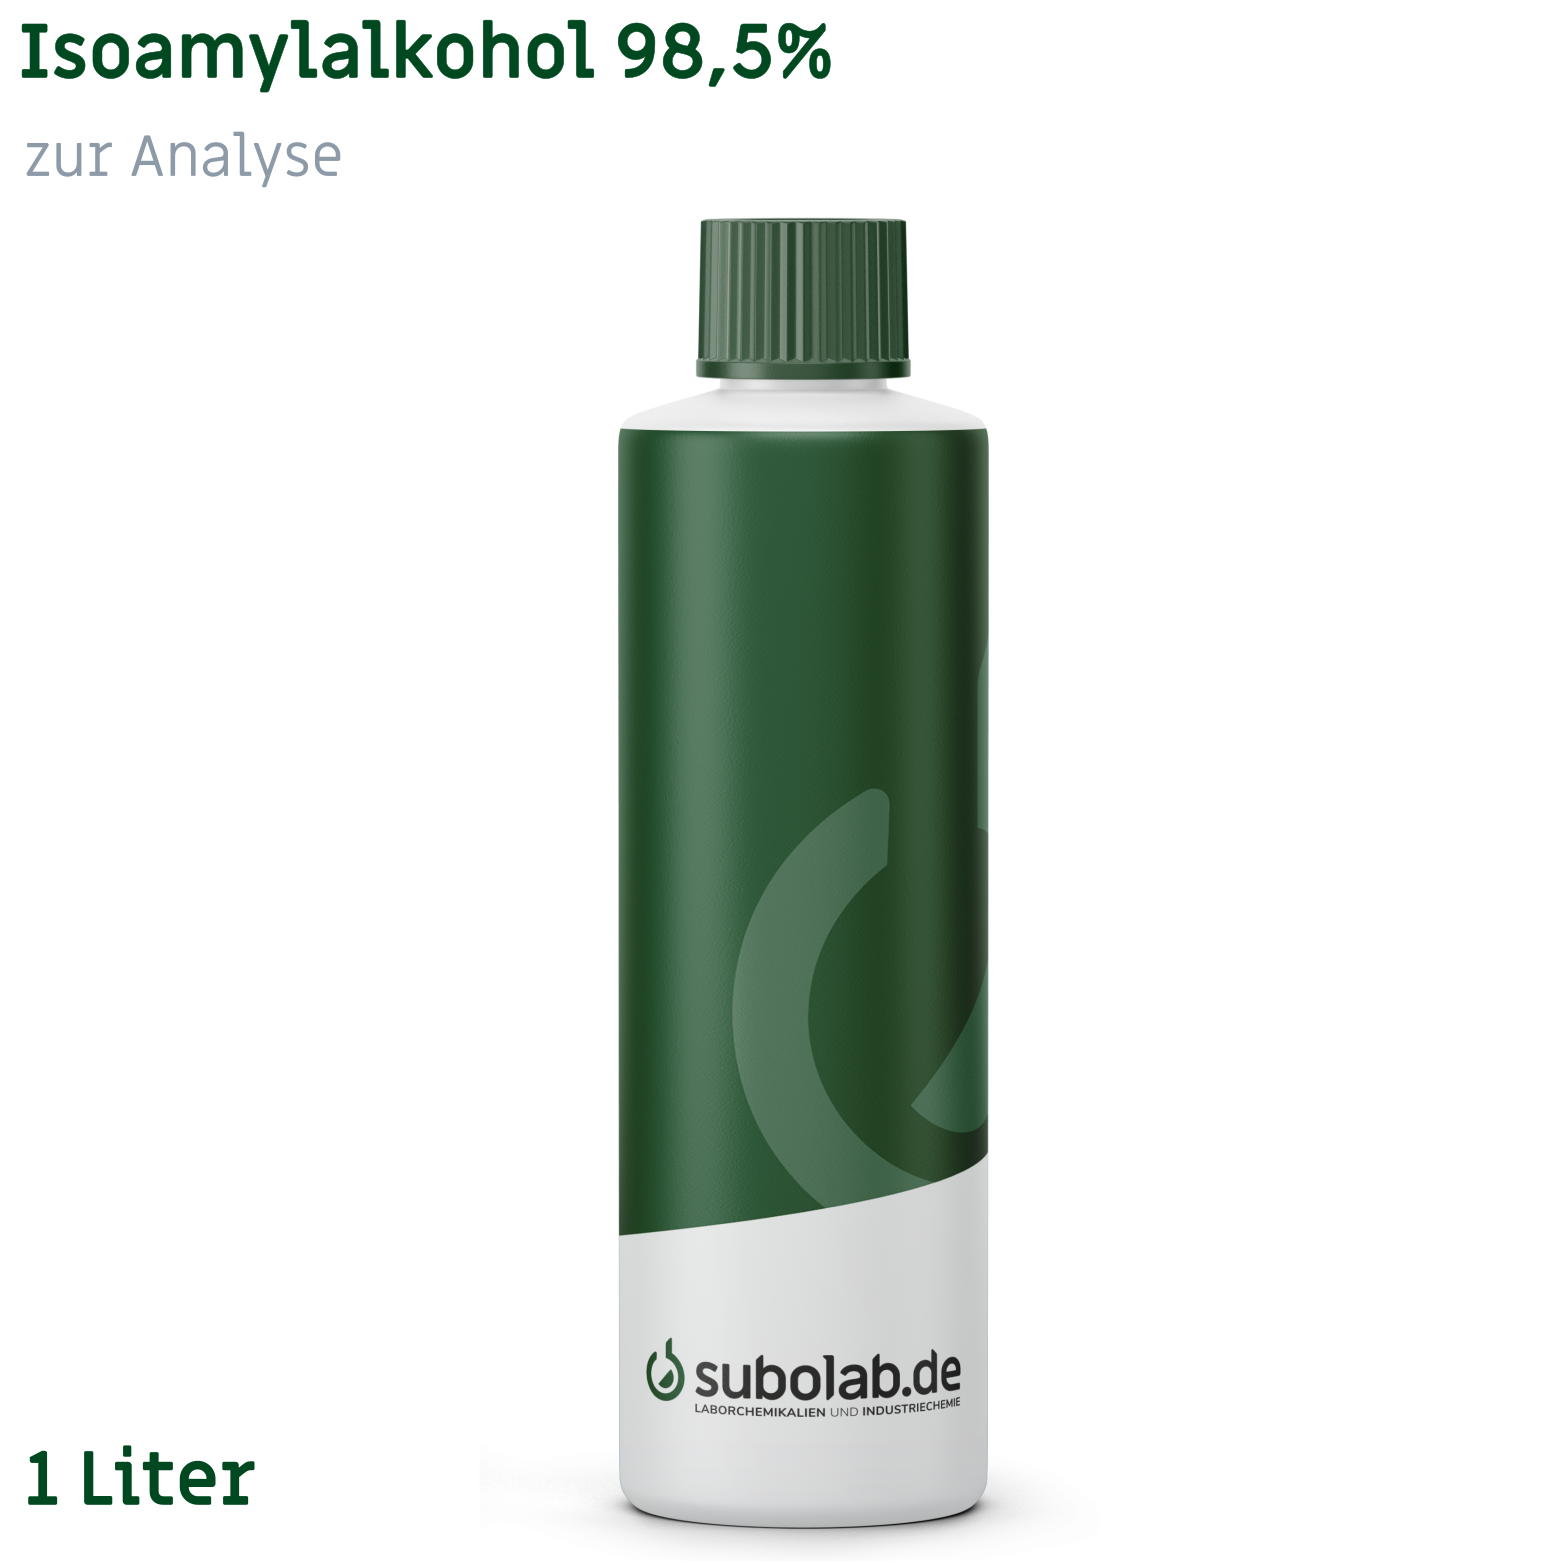 Bild von Isoamylalkohol 98,5% zur Analyse (1 Liter)